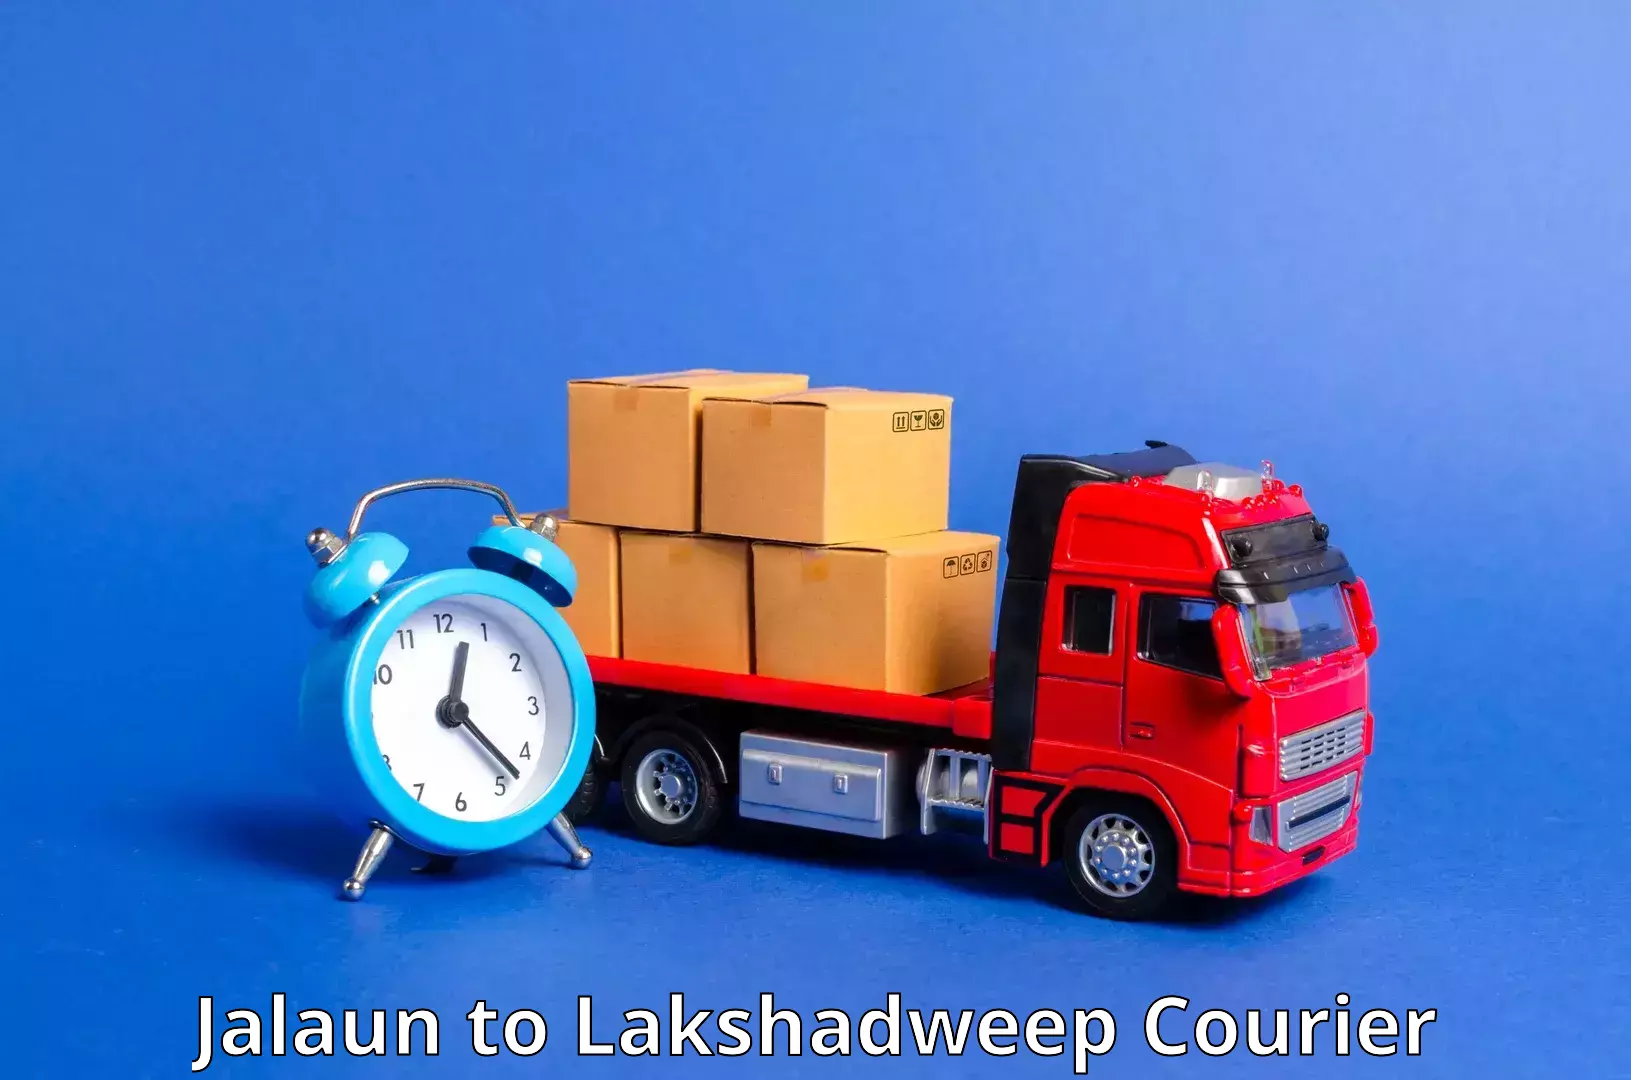 Ocean freight courier Jalaun to Lakshadweep